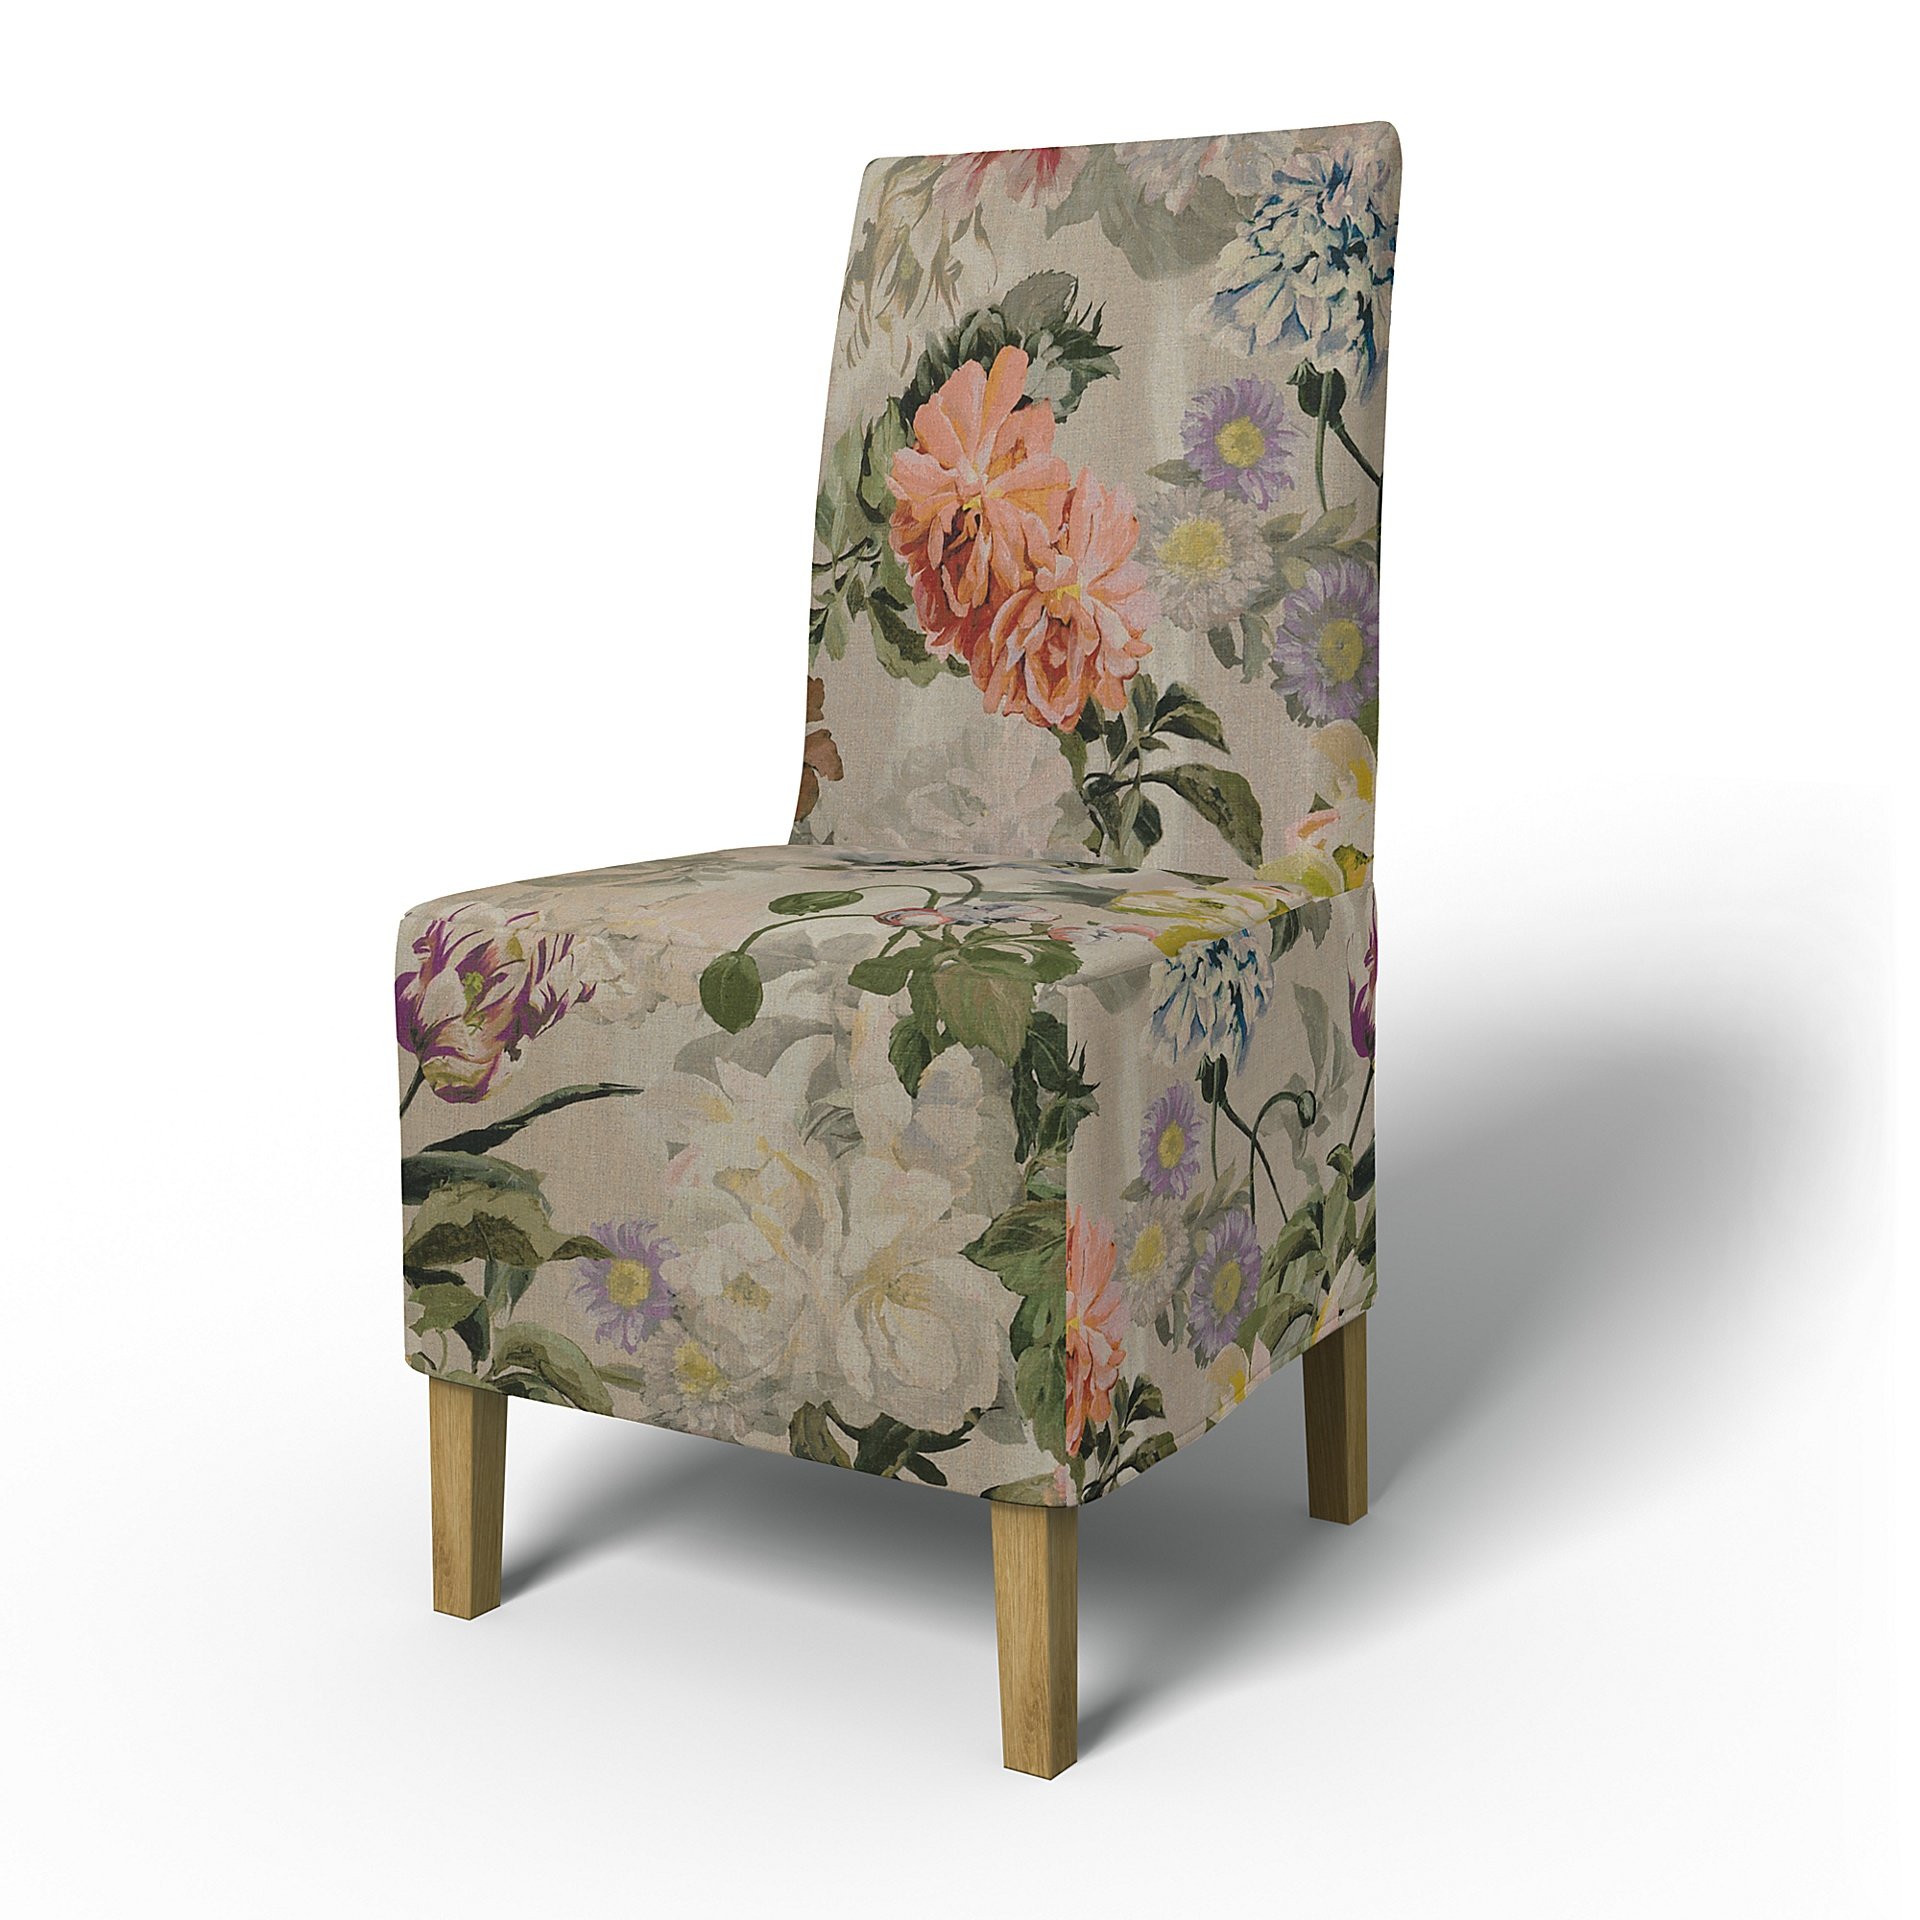 IKEA - Henriksdal Dining Chair Cover Medium skirt (Standard model), Delft Flower - Tuberose, Linen -